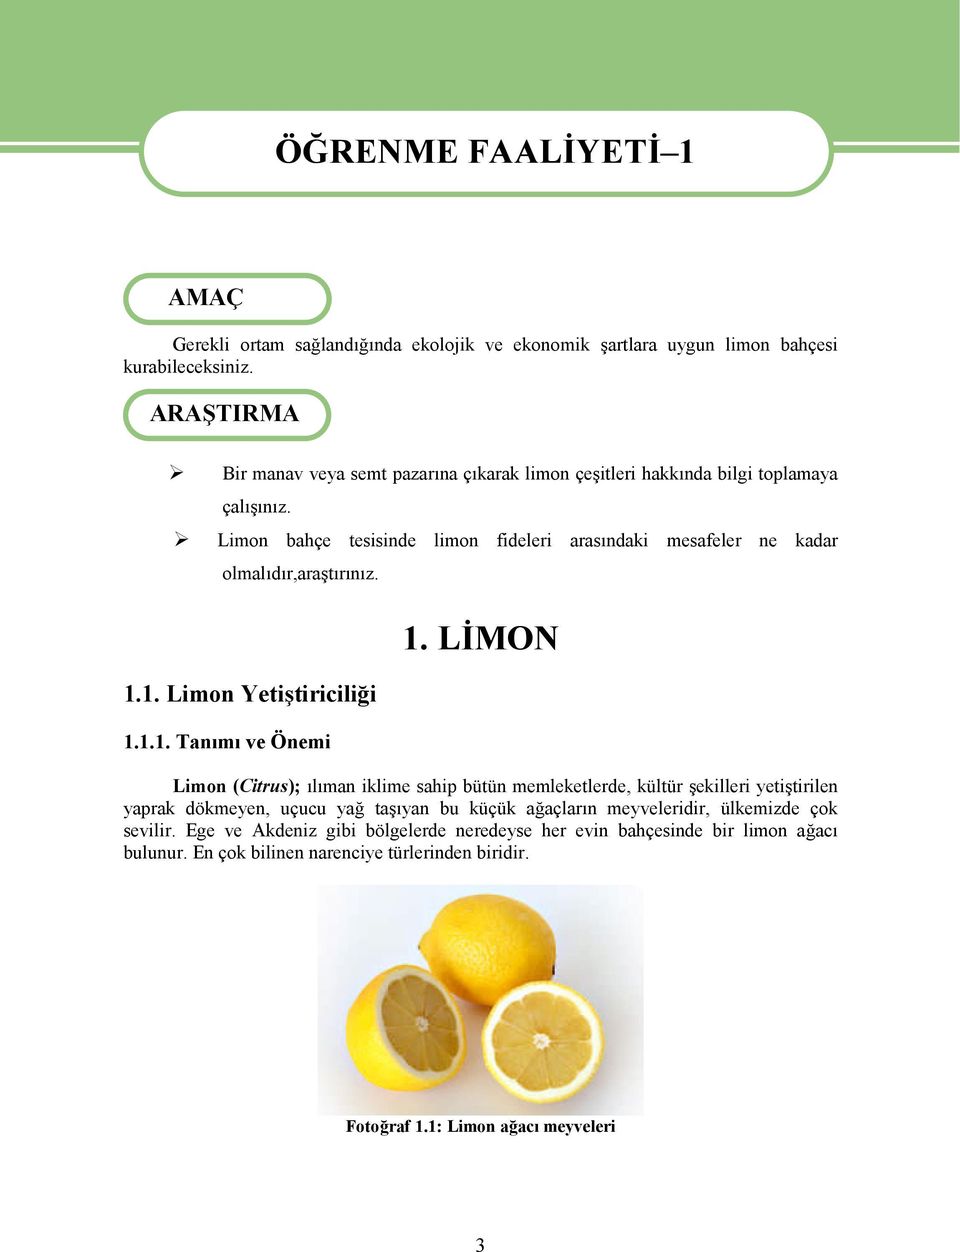 Limon bahçe tesisinde limon fideleri arasındaki mesafeler ne kadar olmalıdır,araştırınız. 1.1. Limon Yetiştiriciliği 1.1.1. Tanımı ve Önemi 1.